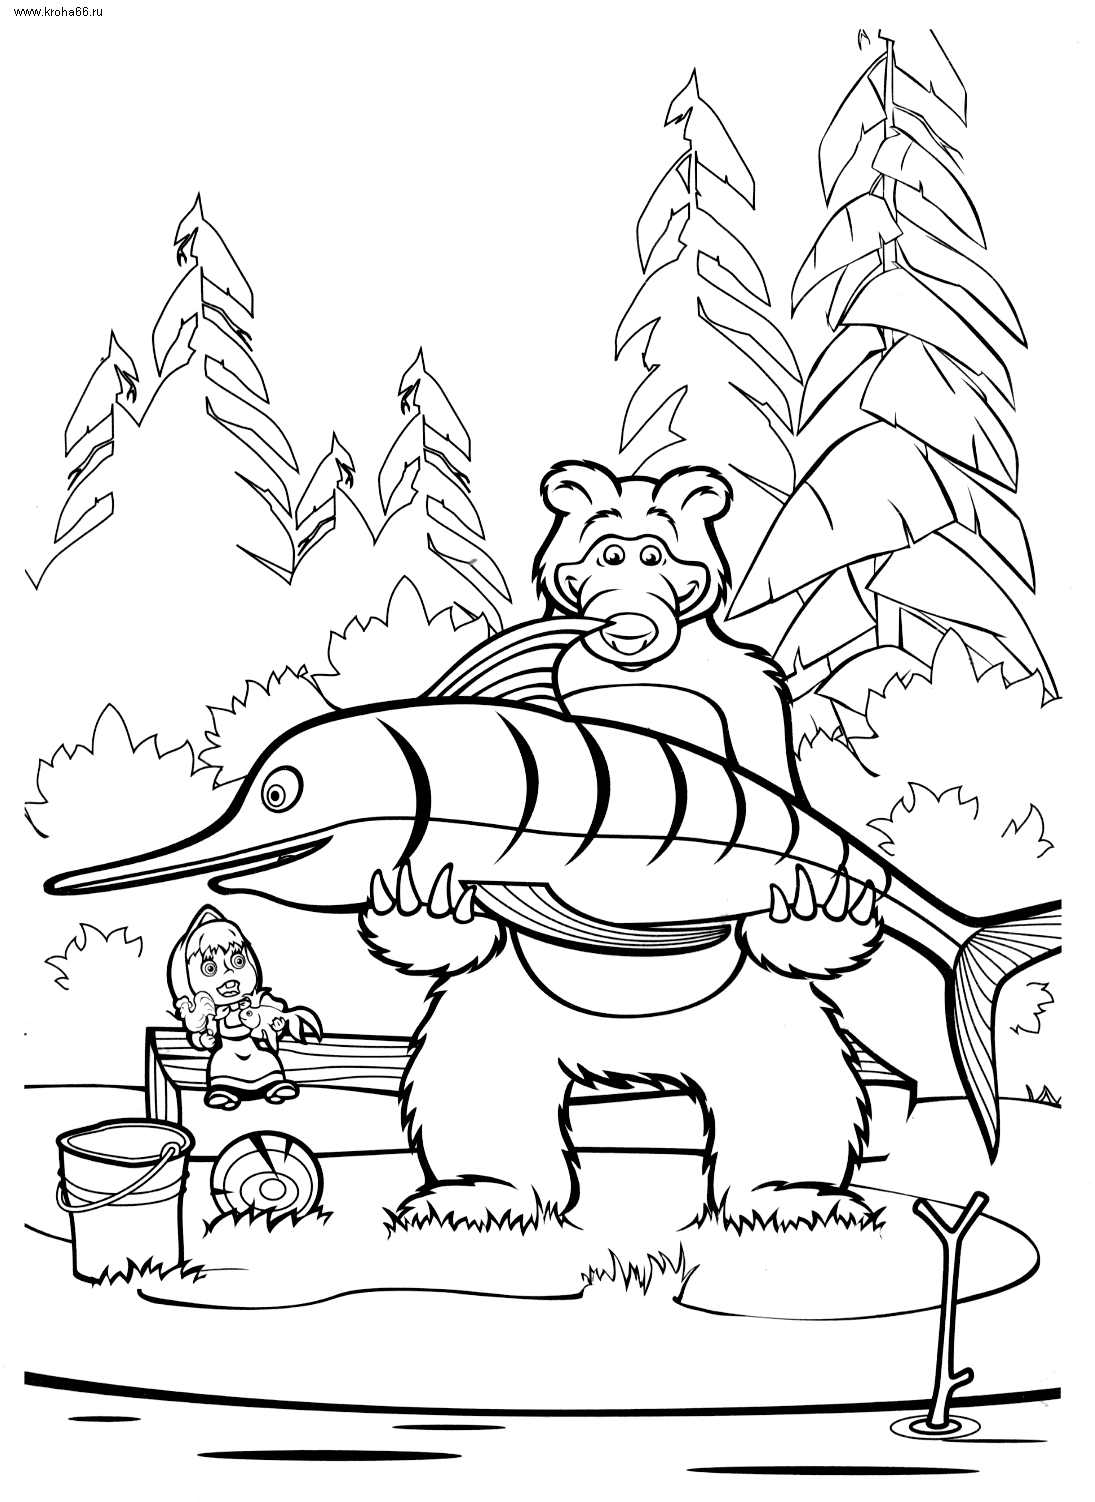 Раскраски Маша и Медведь раскраска для детей, маша и медведь, большая рыба